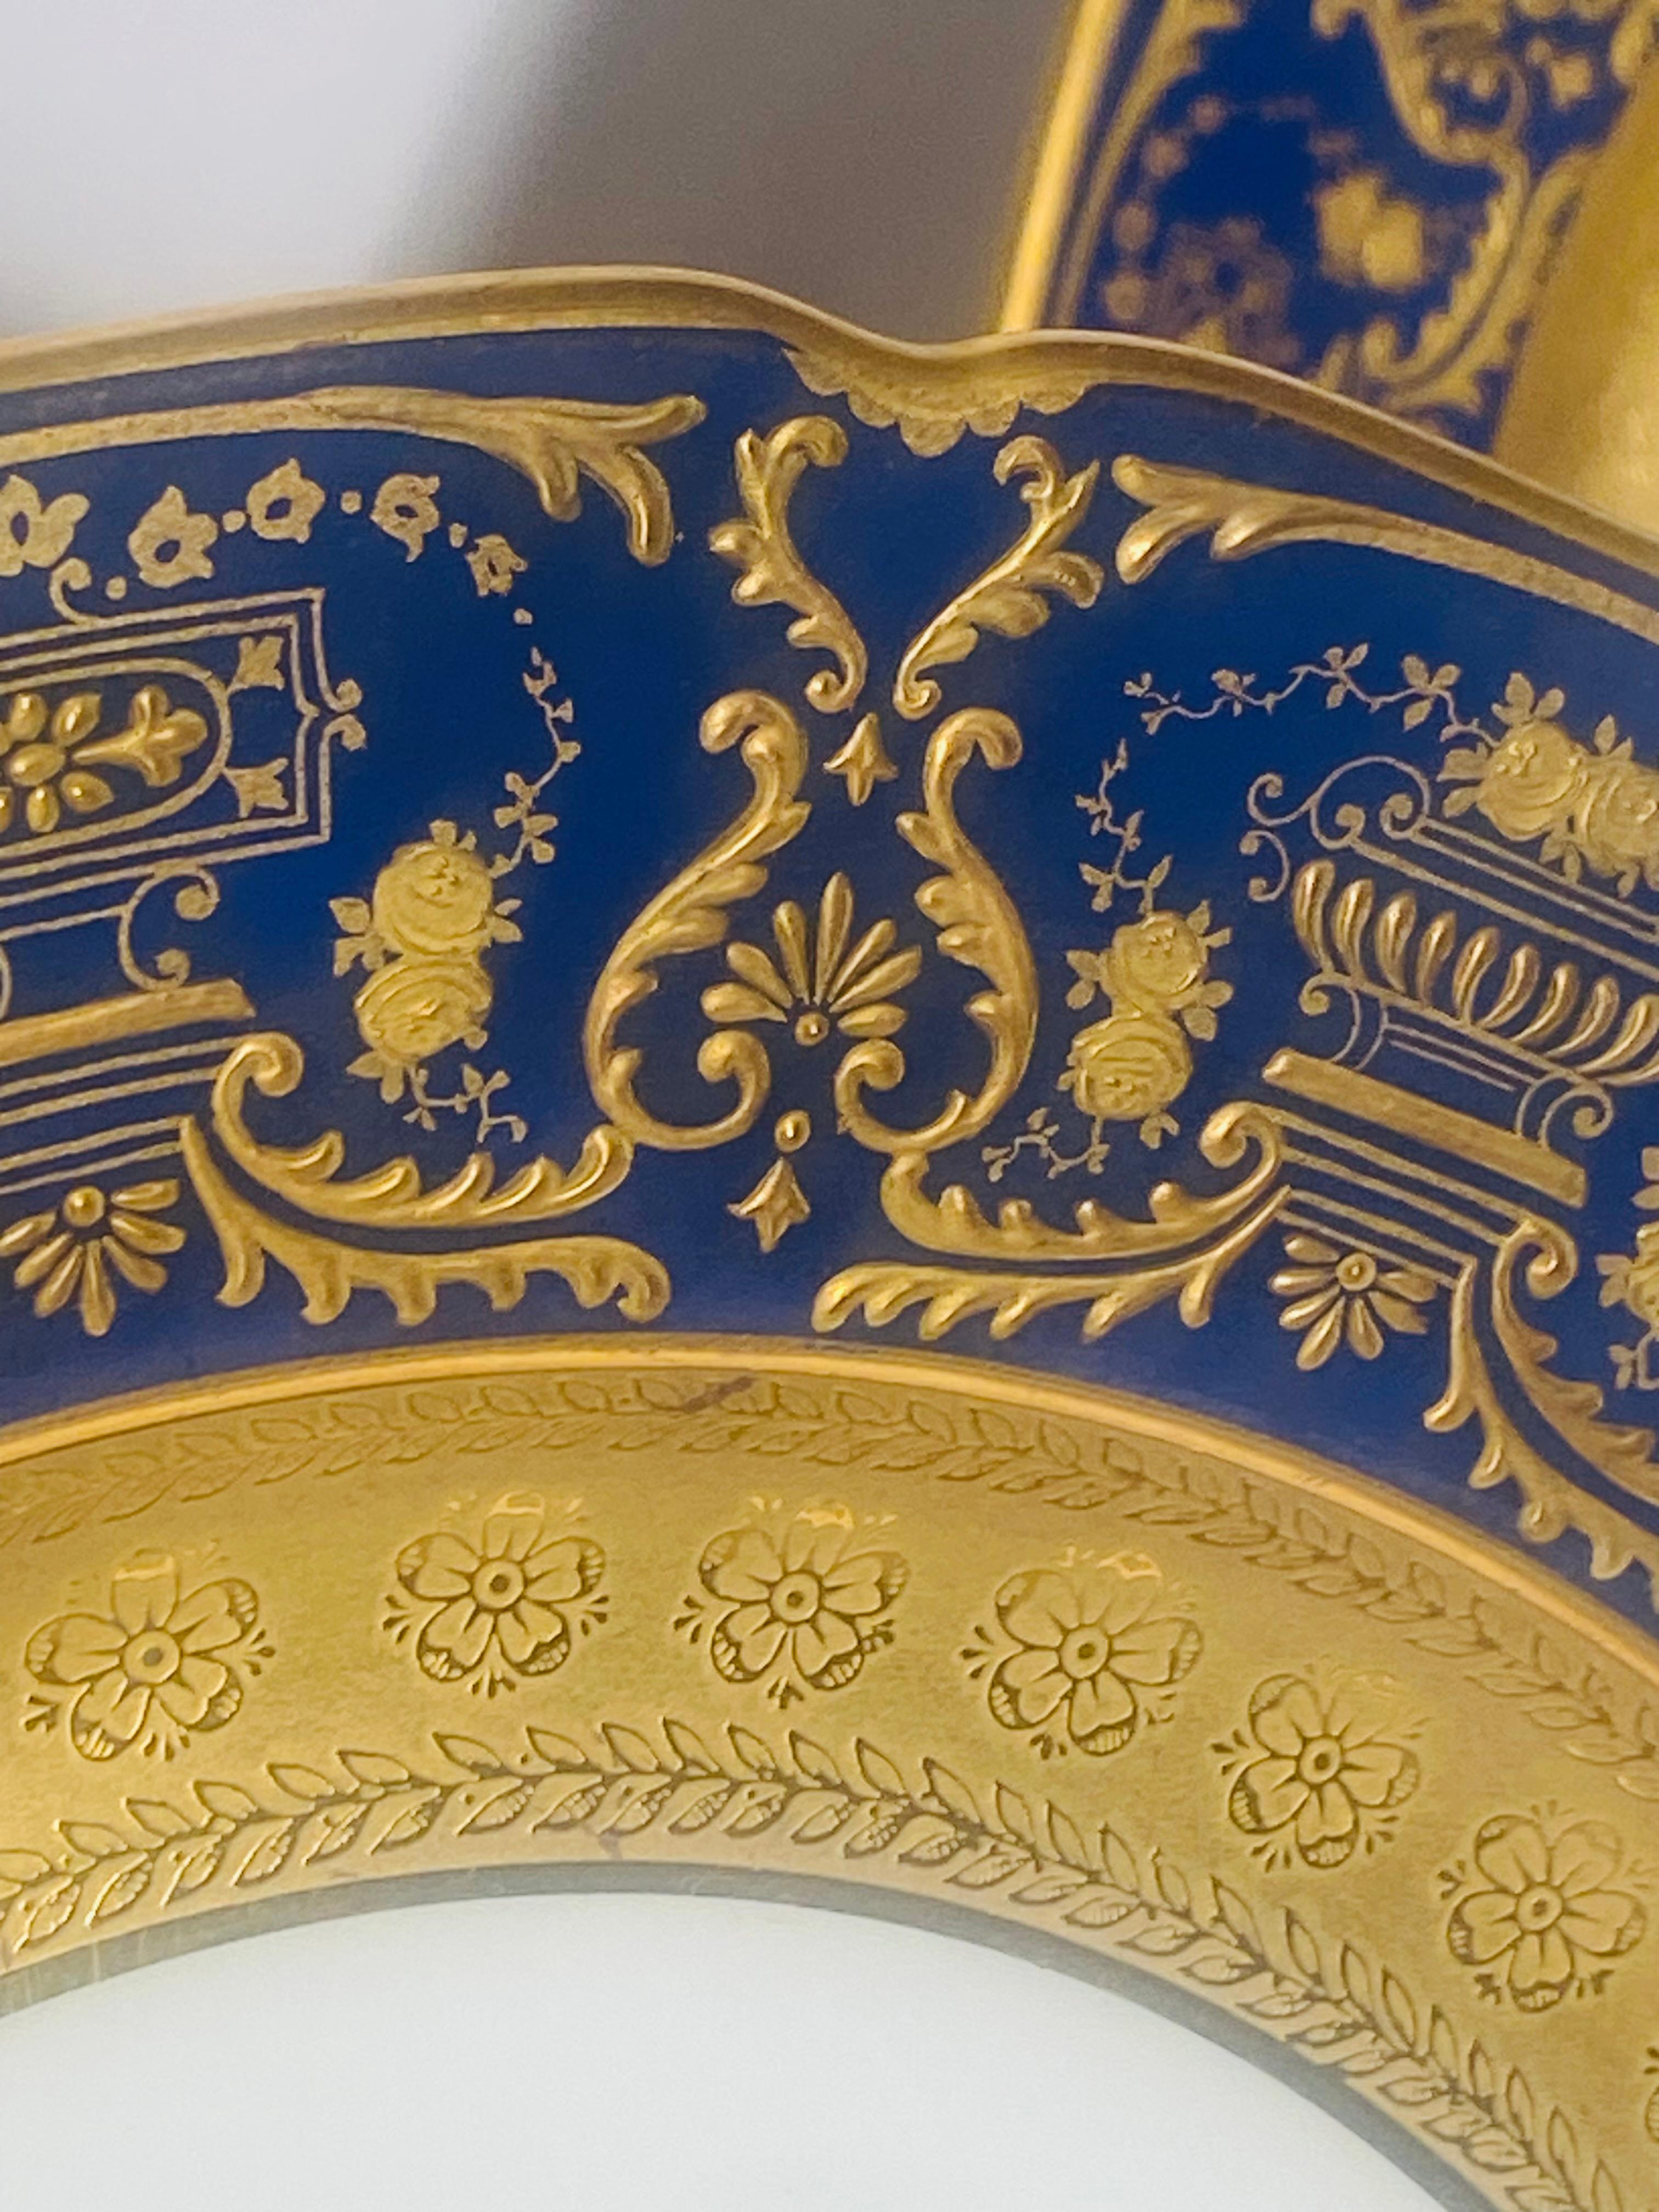 Un ensemble attrayant d'assiettes à dîner ou de présentation de l'une des usines les plus connues de Limoges à l'âge d'or, William Guerin. Cette plaque présente un motif élaboré de dorure en relief sur leurs cols bleu cobalt et une bande intérieure